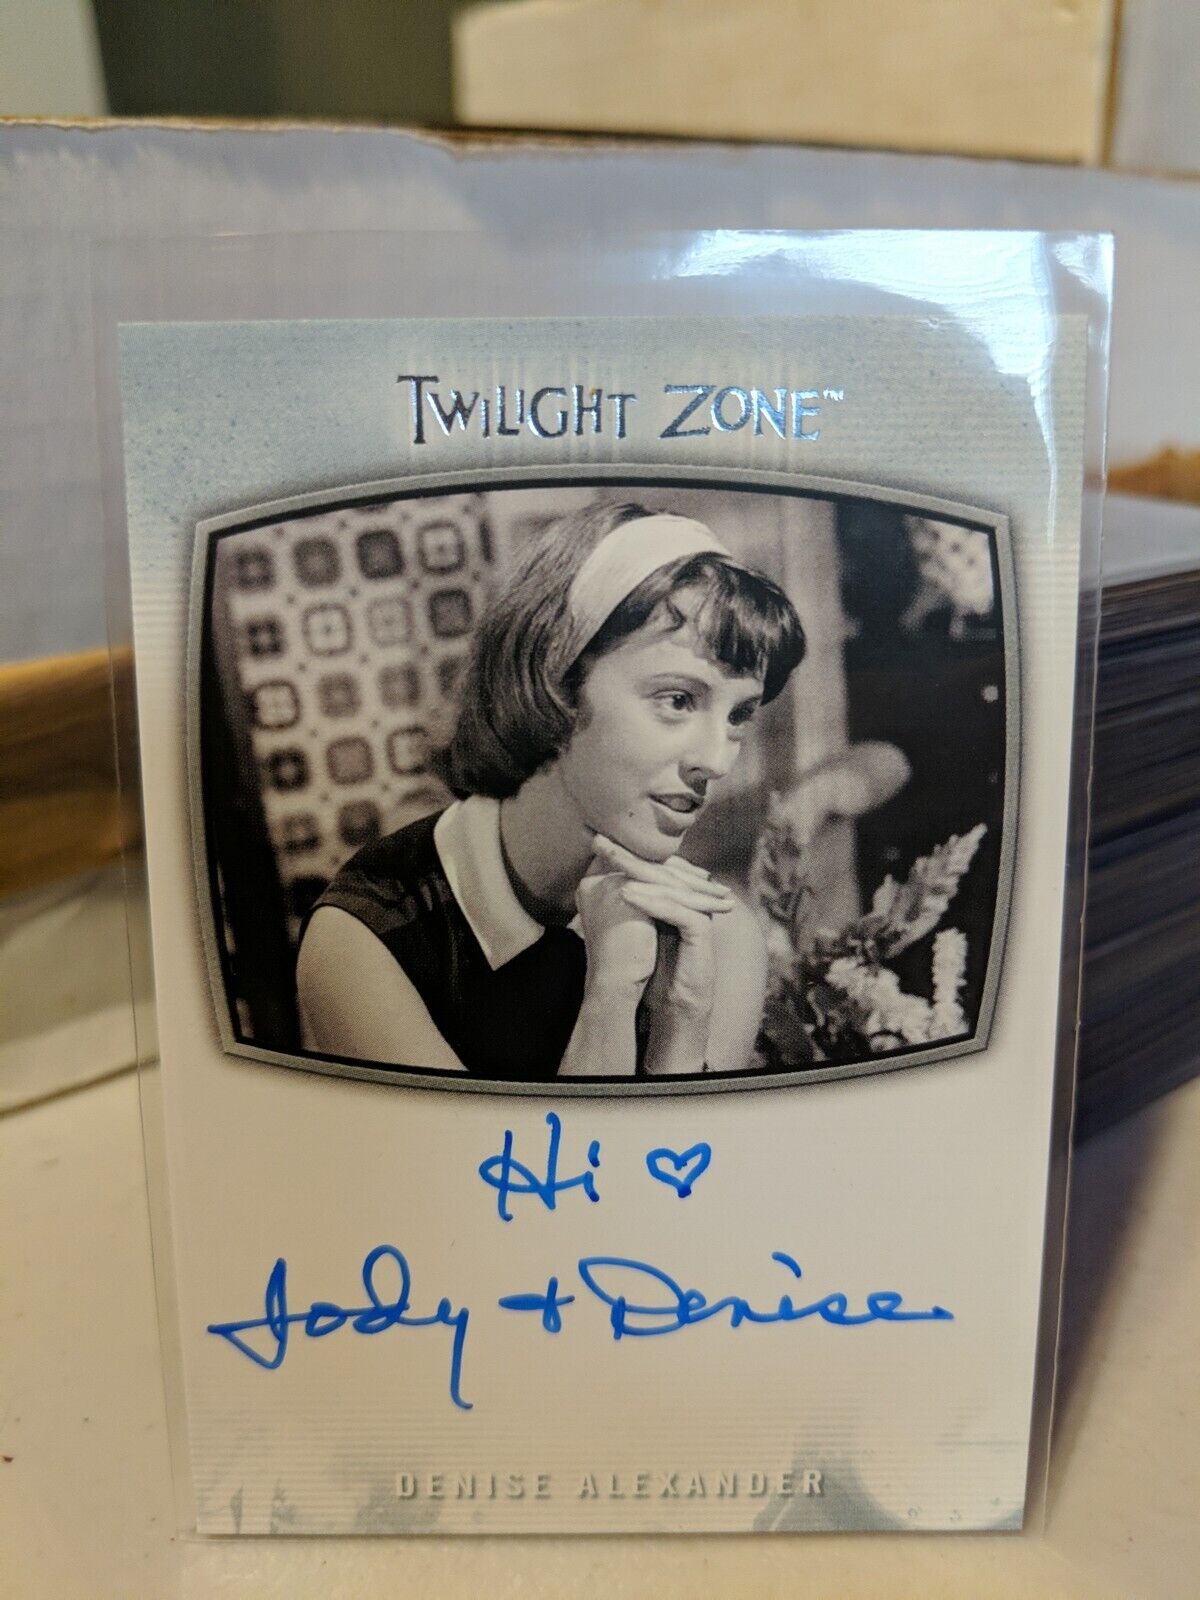 2020 Twilight Zone Archives Denise Alexander AI-31 Inscription Autograph Card*Hi